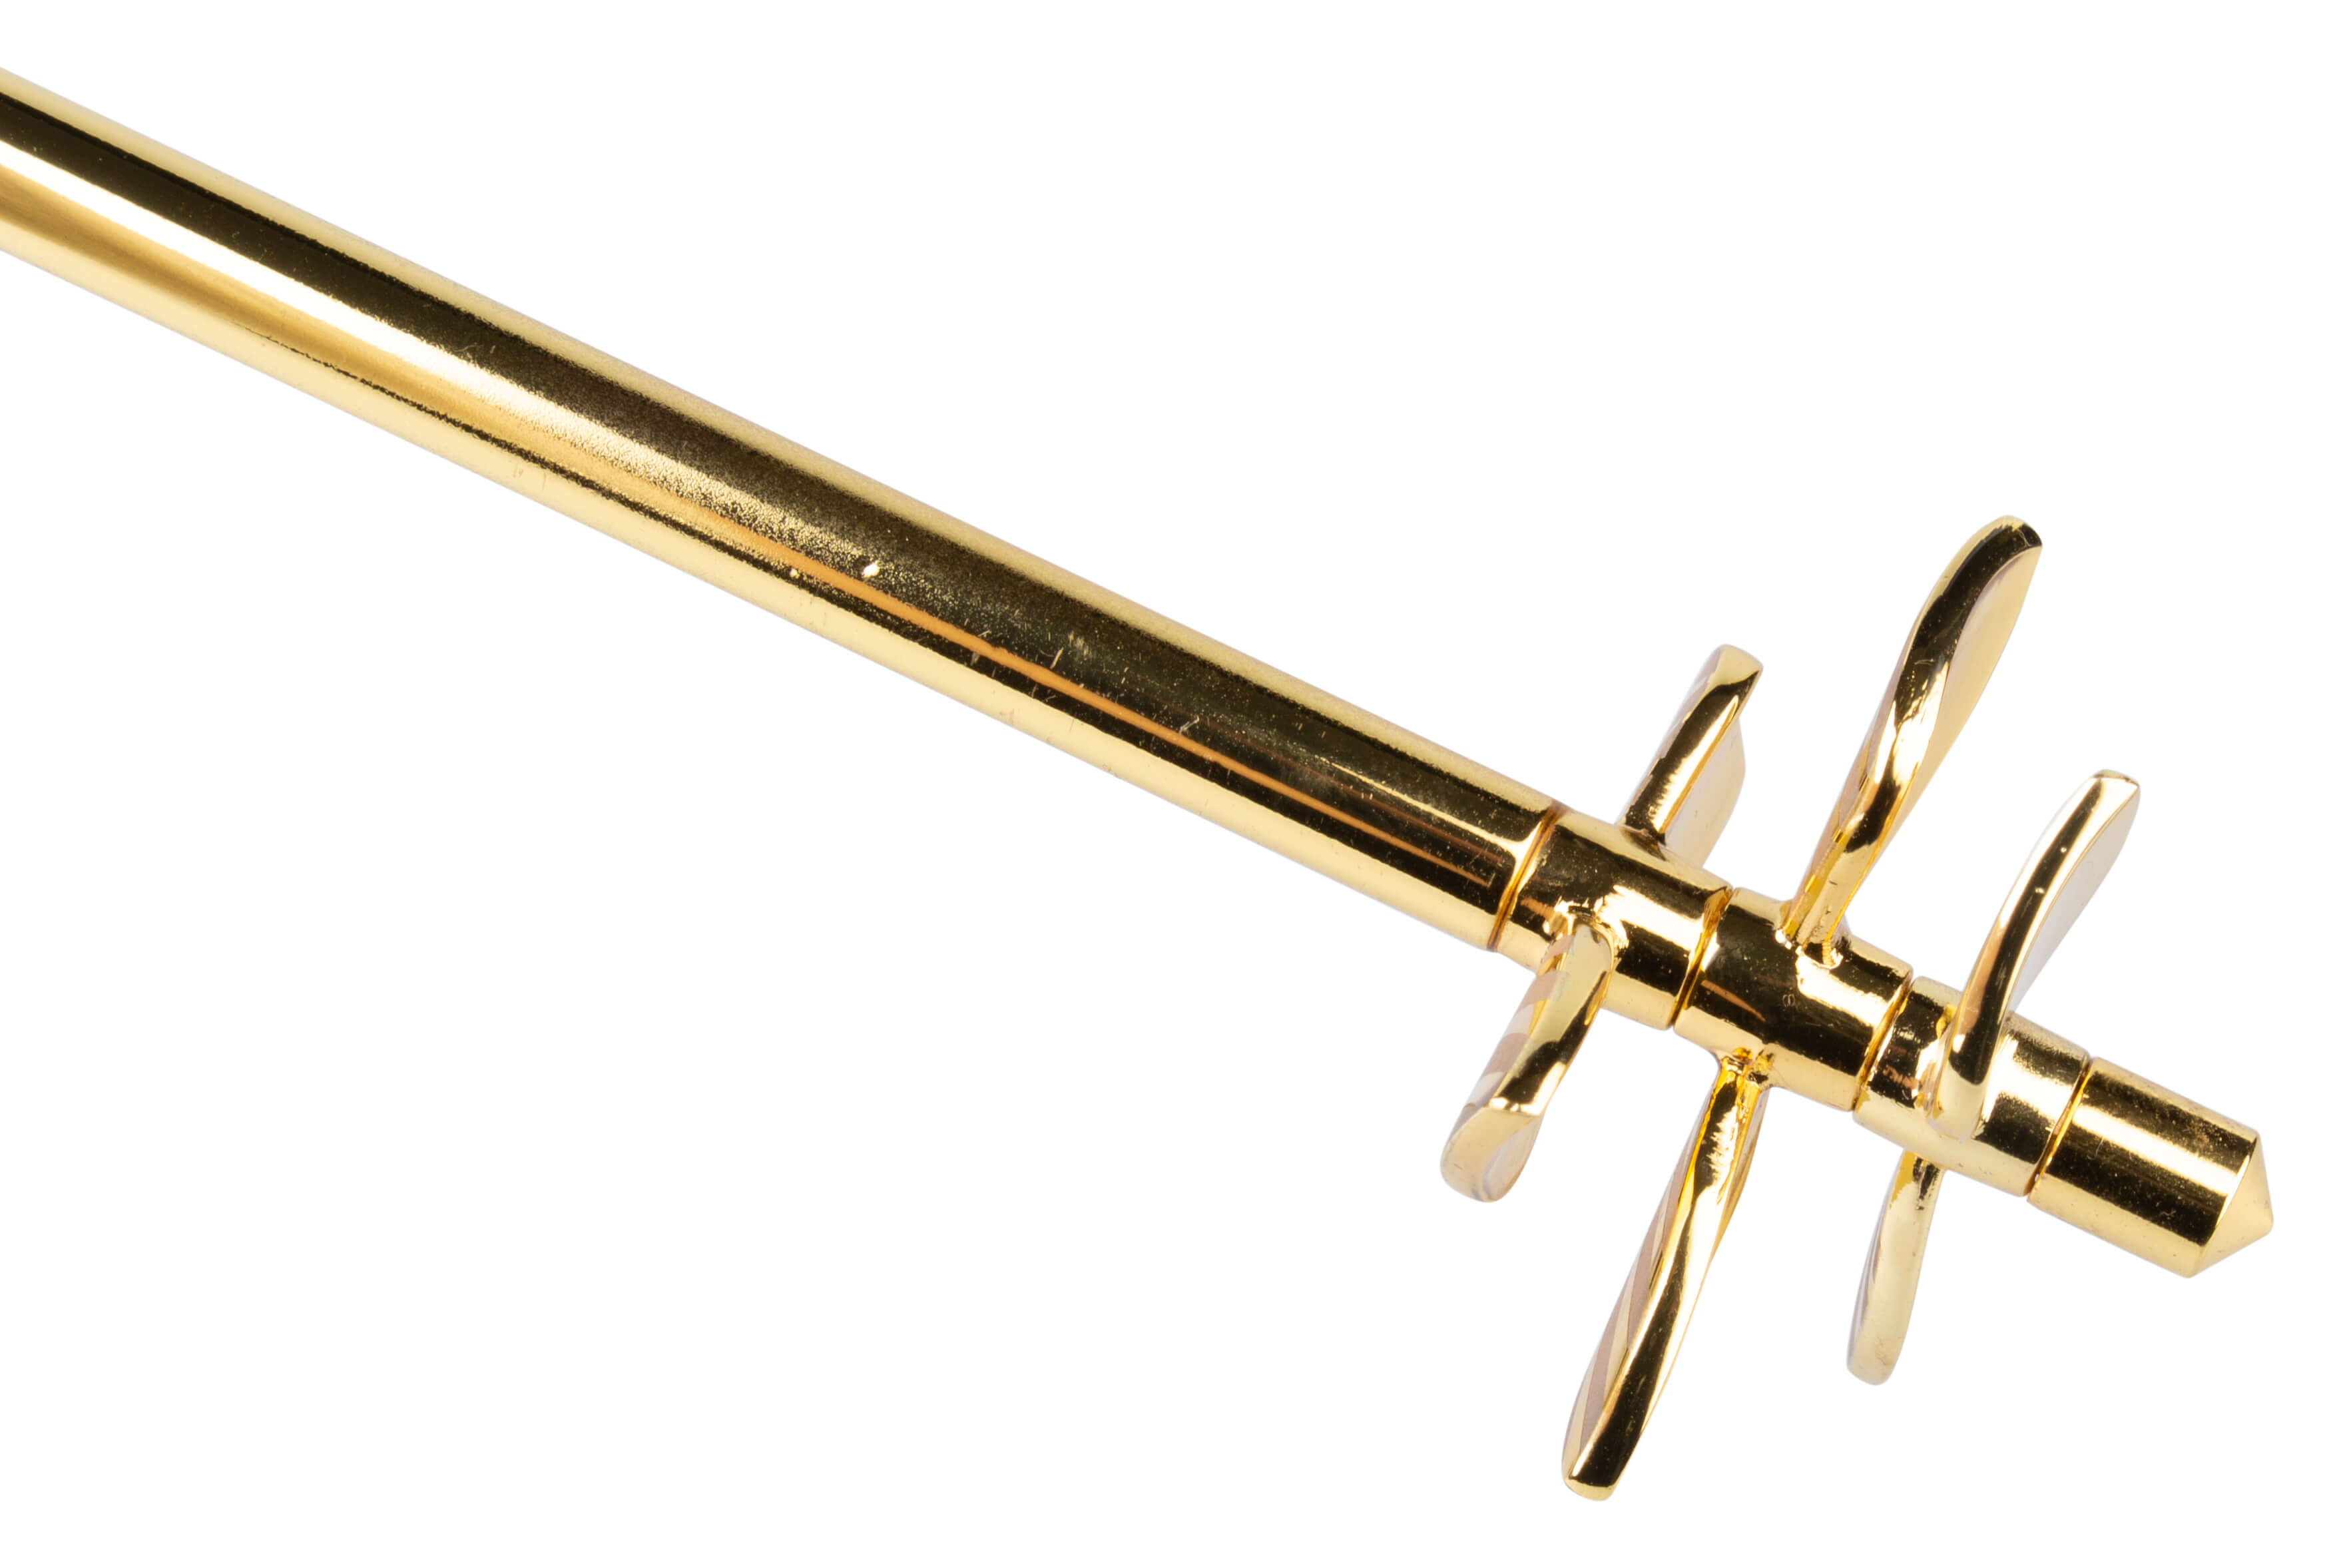 A Swizzlestick, goldfarben, Überbartools - 41,5cm